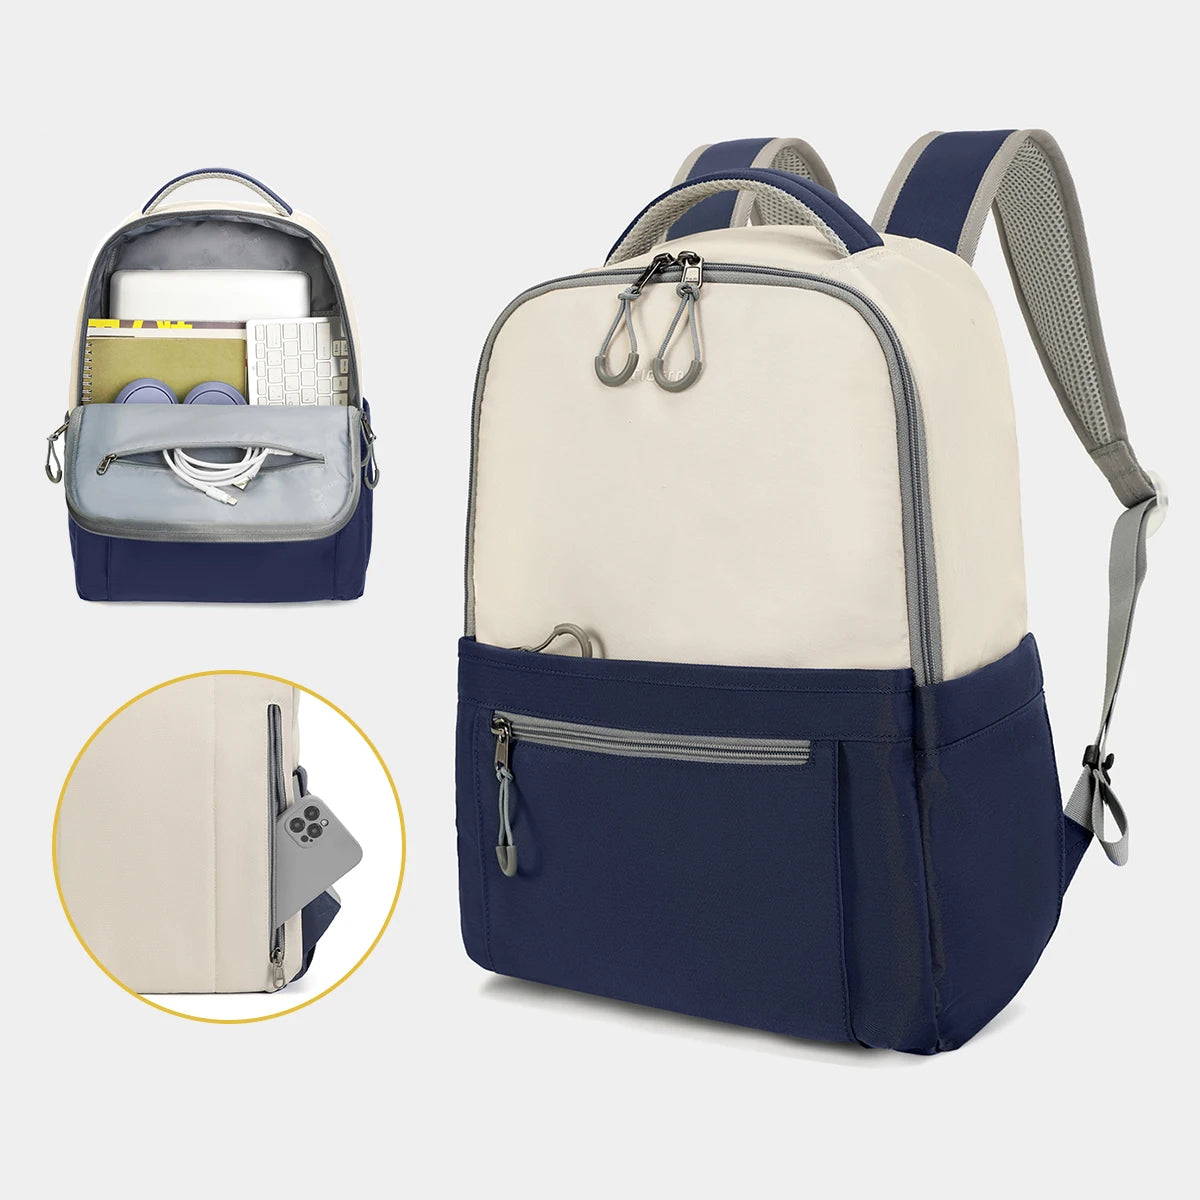 Lifetime Warranty Women Backpack 14-15.6inch Laptop Backpack School Bag Blue